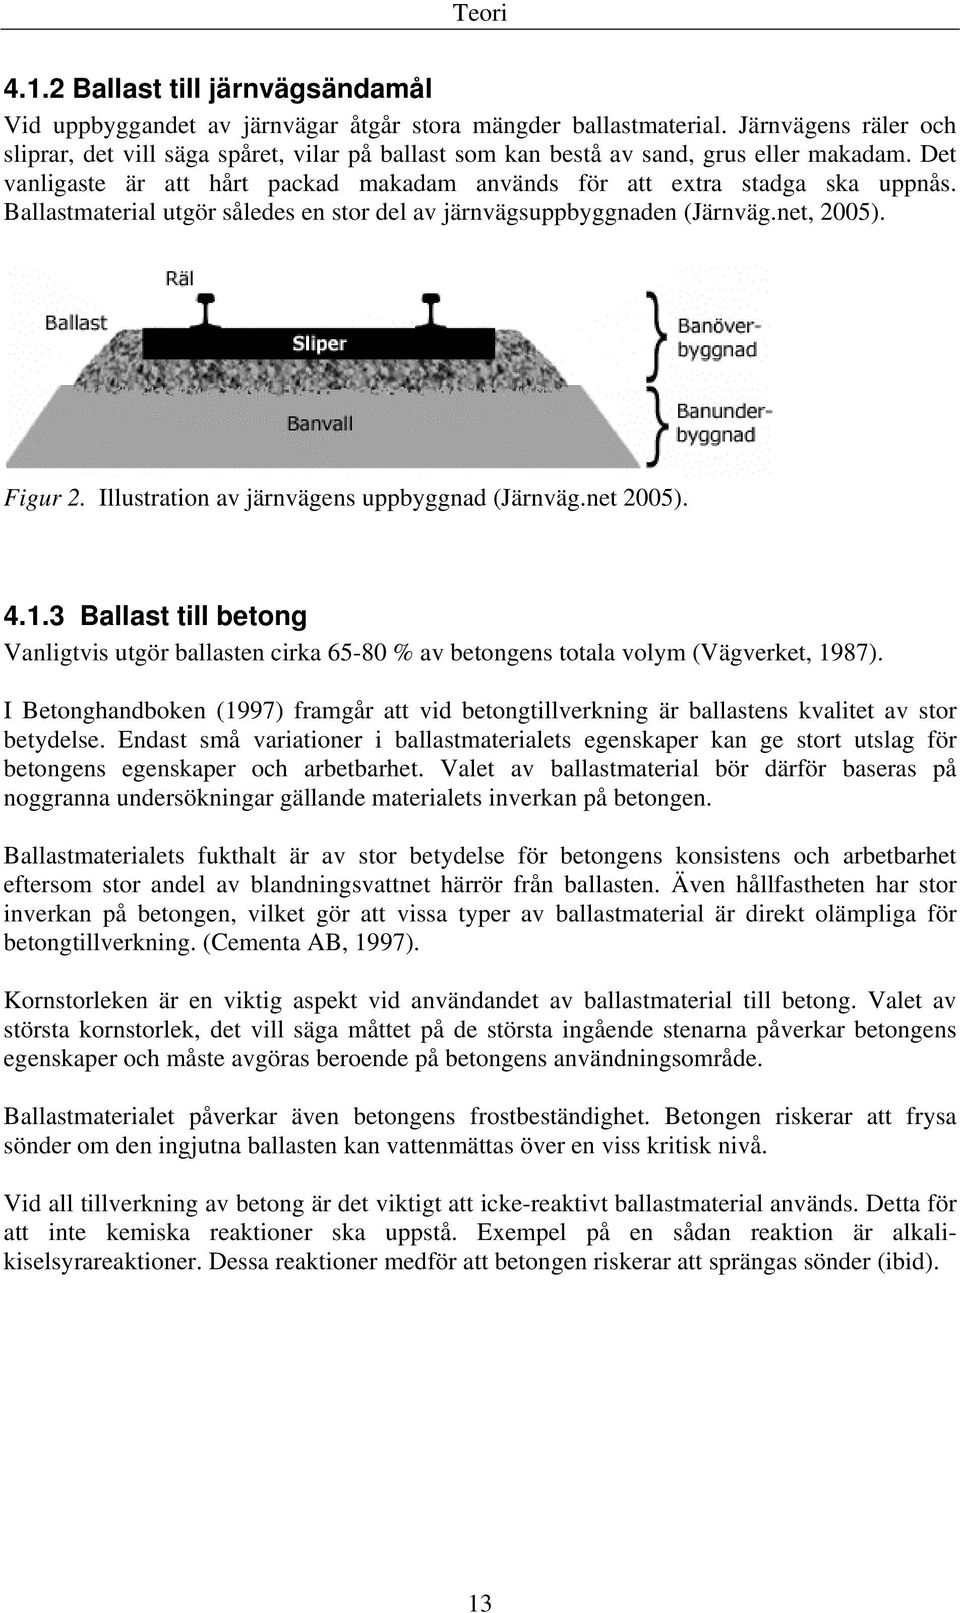 Ballastmaterial utgör således en stor del av järnvägsuppbyggnaden (Järnväg.net, 2005). Figur 2. Illustration av järnvägens uppbyggnad (Järnväg.net 2005). 4.1.